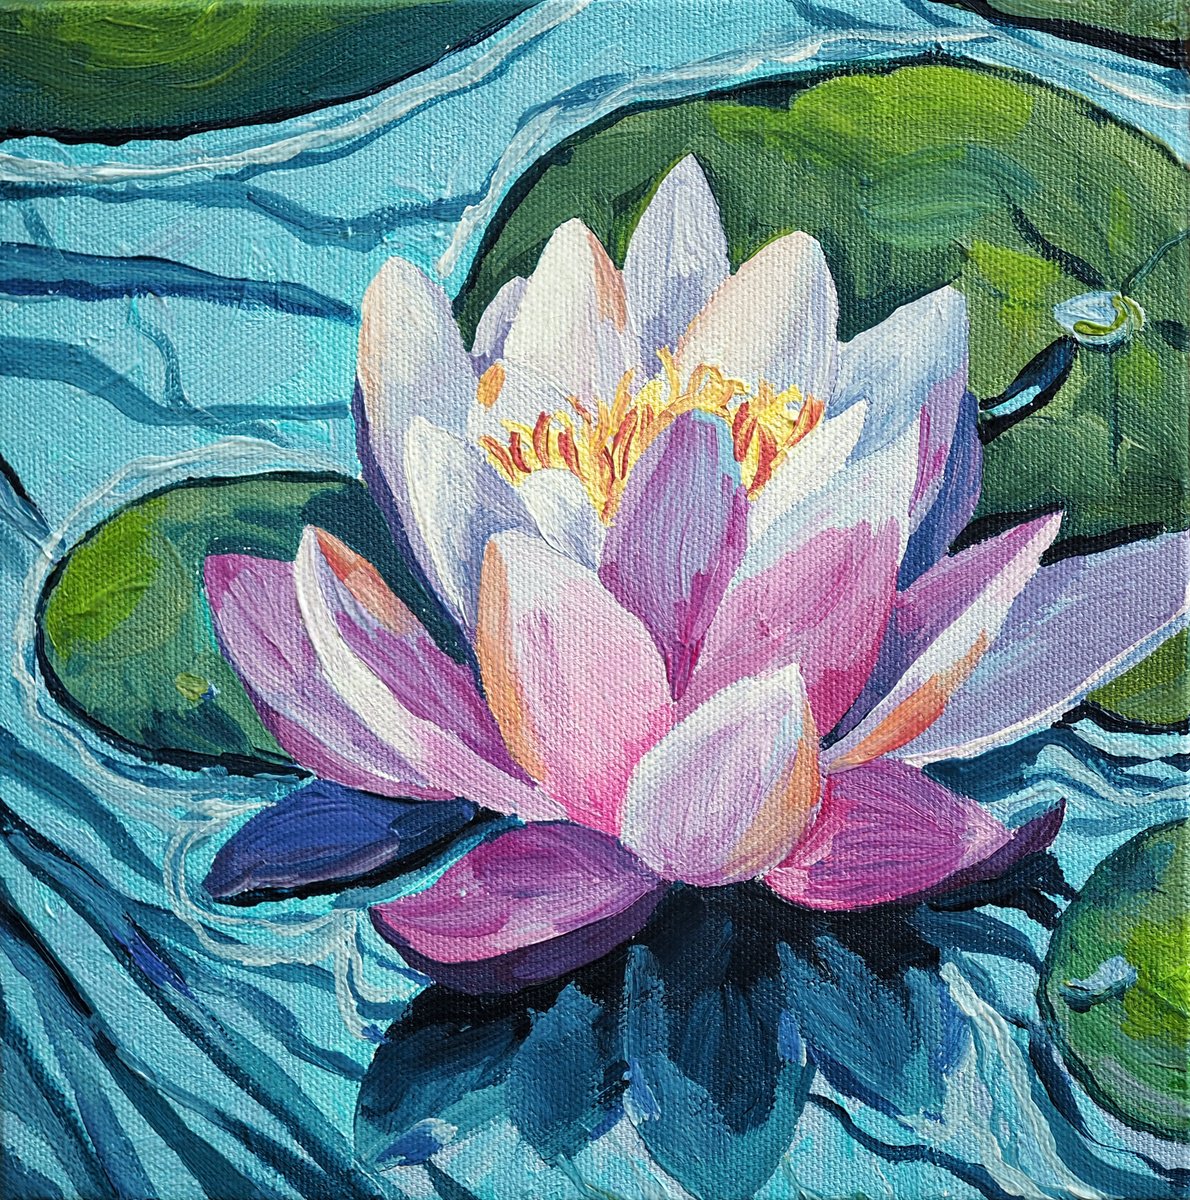 Lotus flower - original artwork by Delnara El